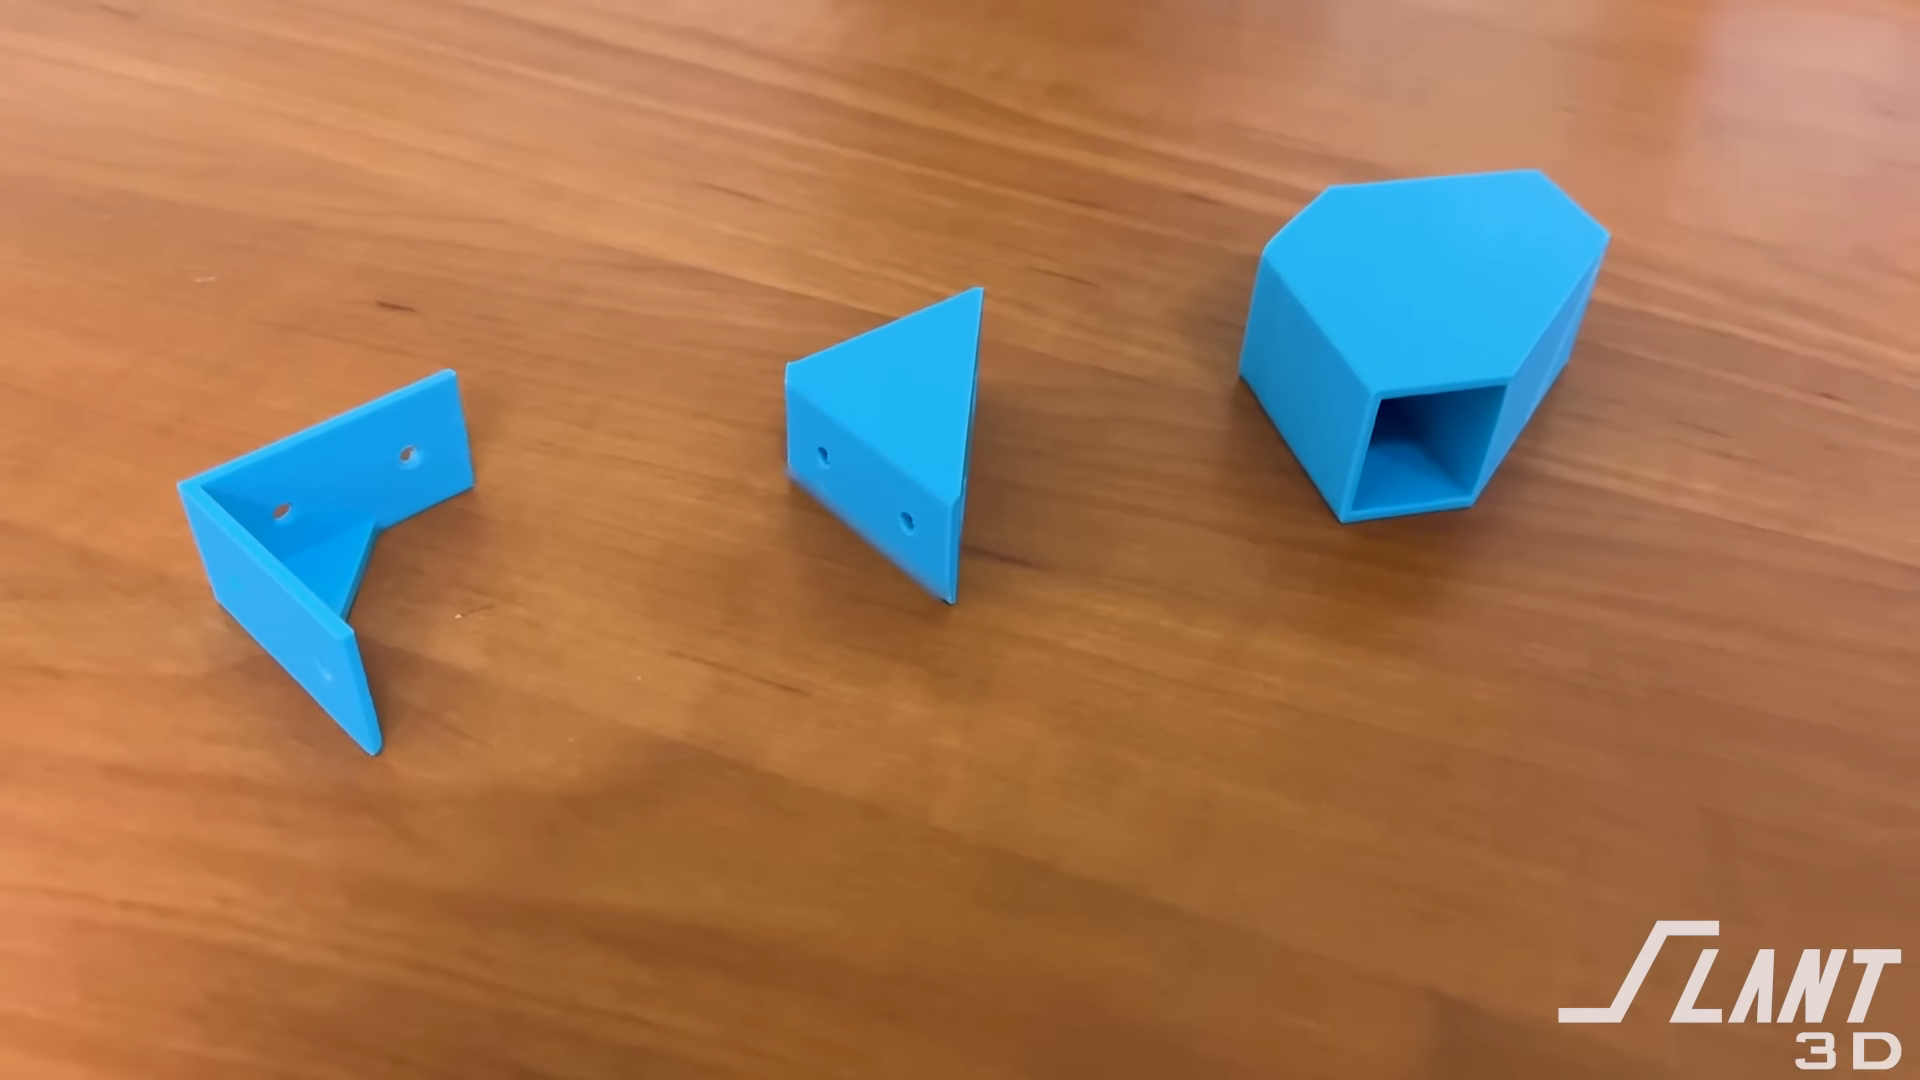 3D Printed Measuring Cube  3d printing, 3d printing diy, Useful